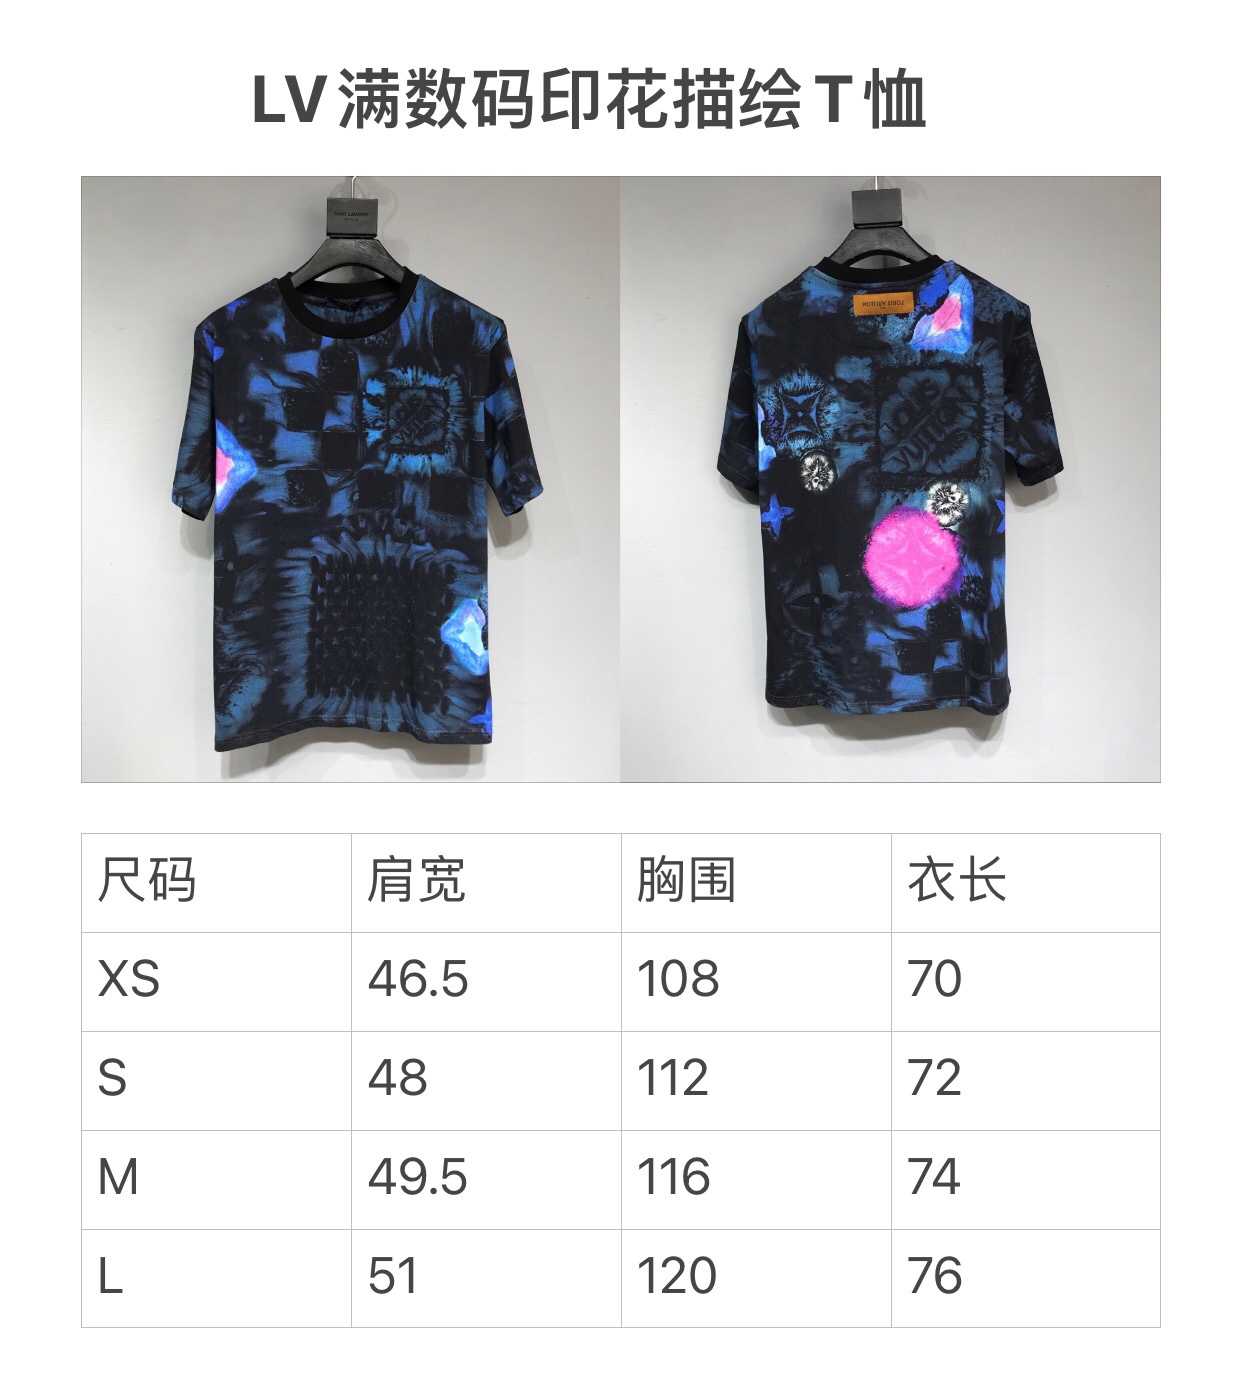 LV  2021 New Tshirt